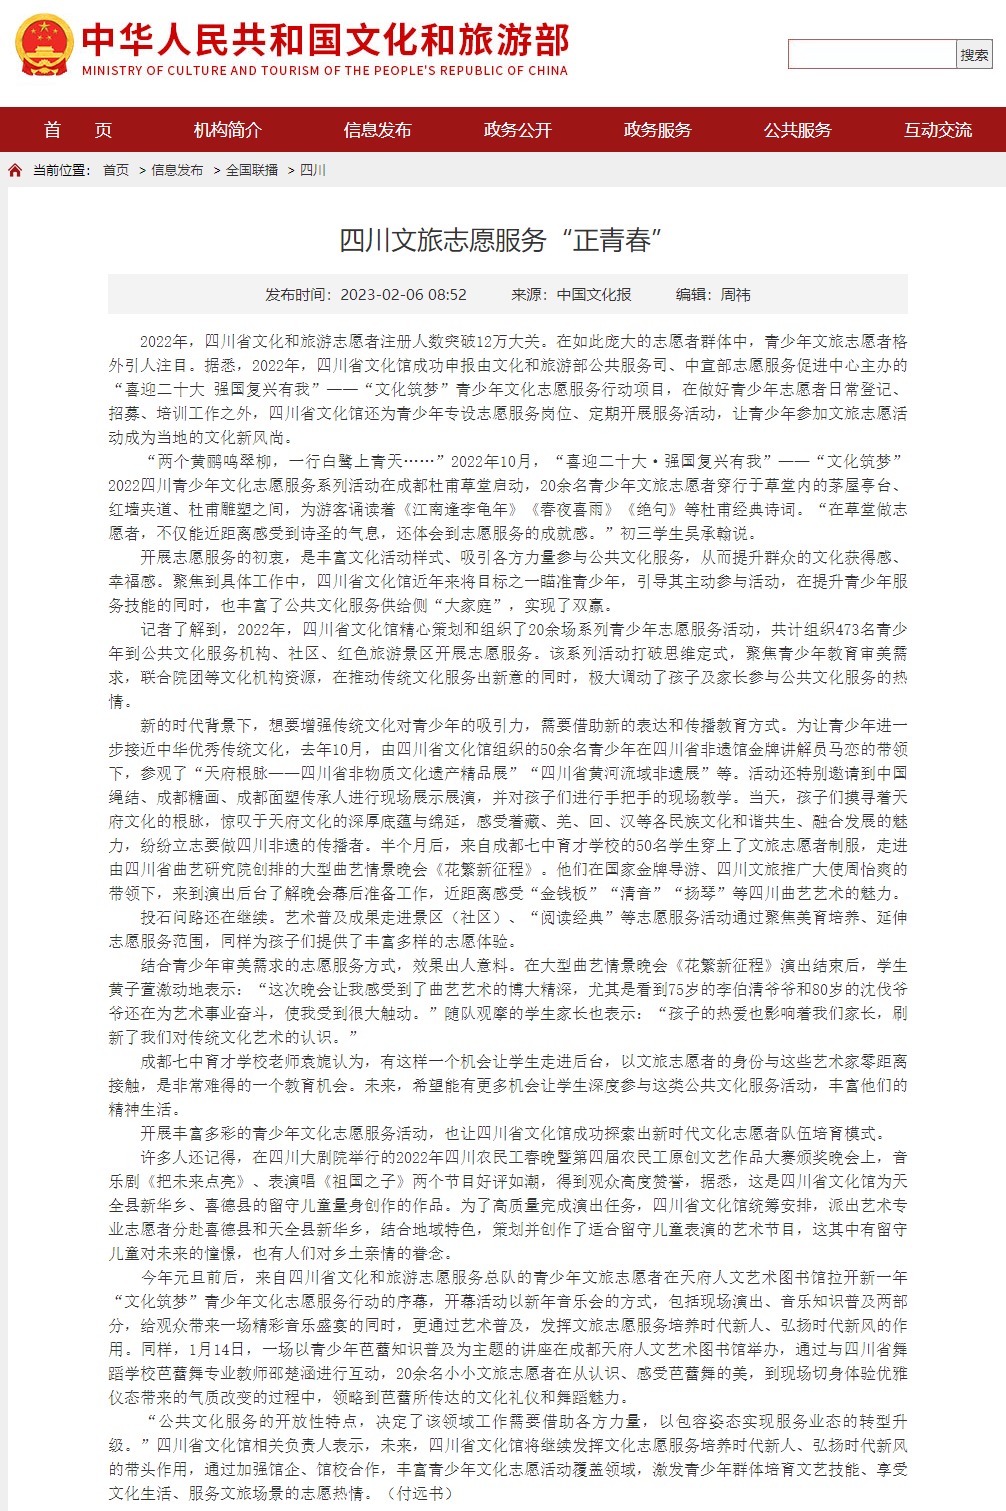 网页捕获_28-3-2023_10441_www.mct.gov.cn.jpeg